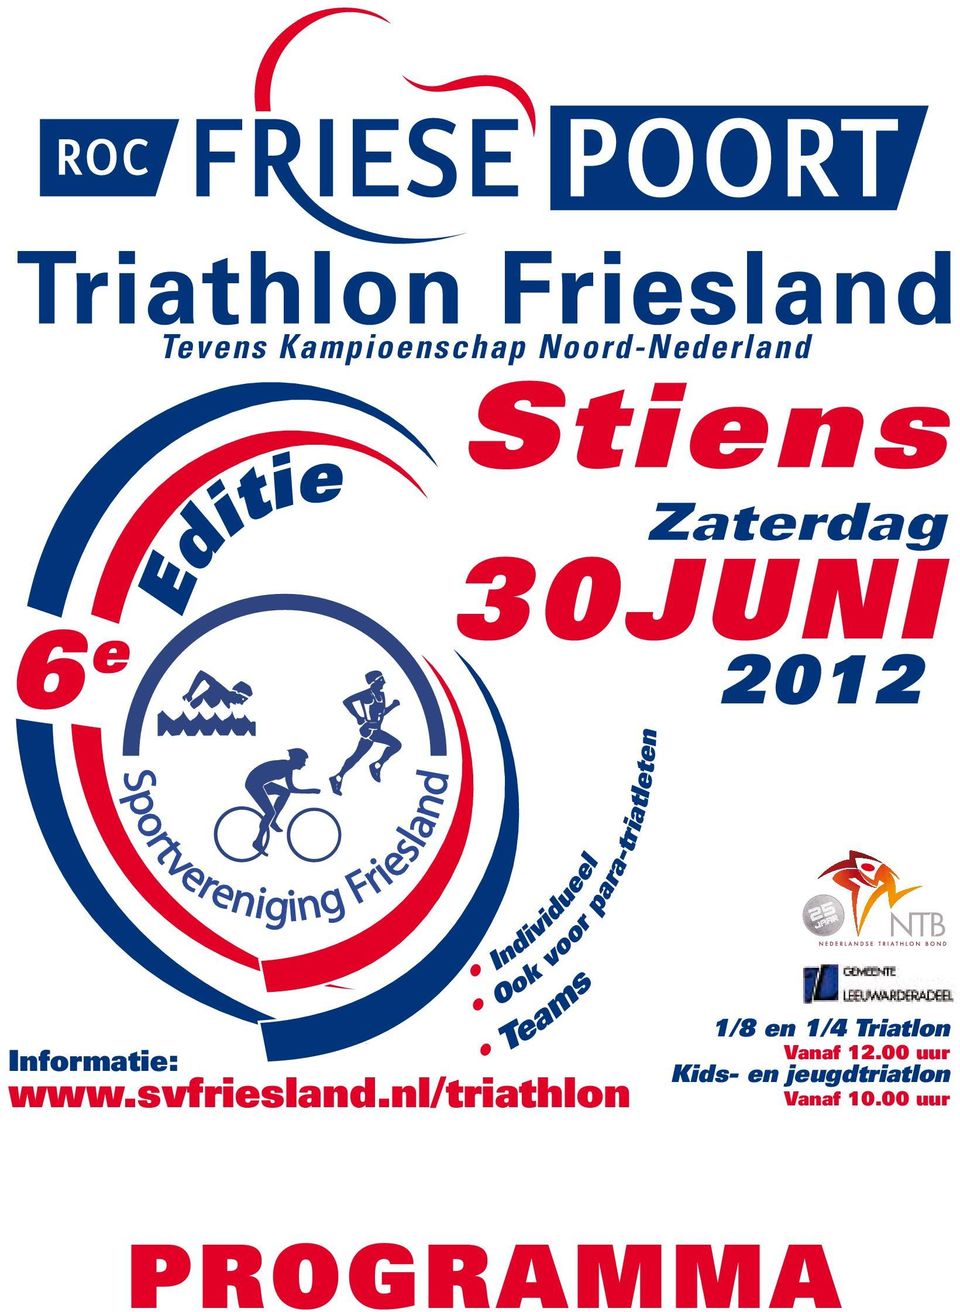 Informatie: Editie Sportvereniging Friesland Ook voor para-triatleten Teams Individueel www.svfriesland.